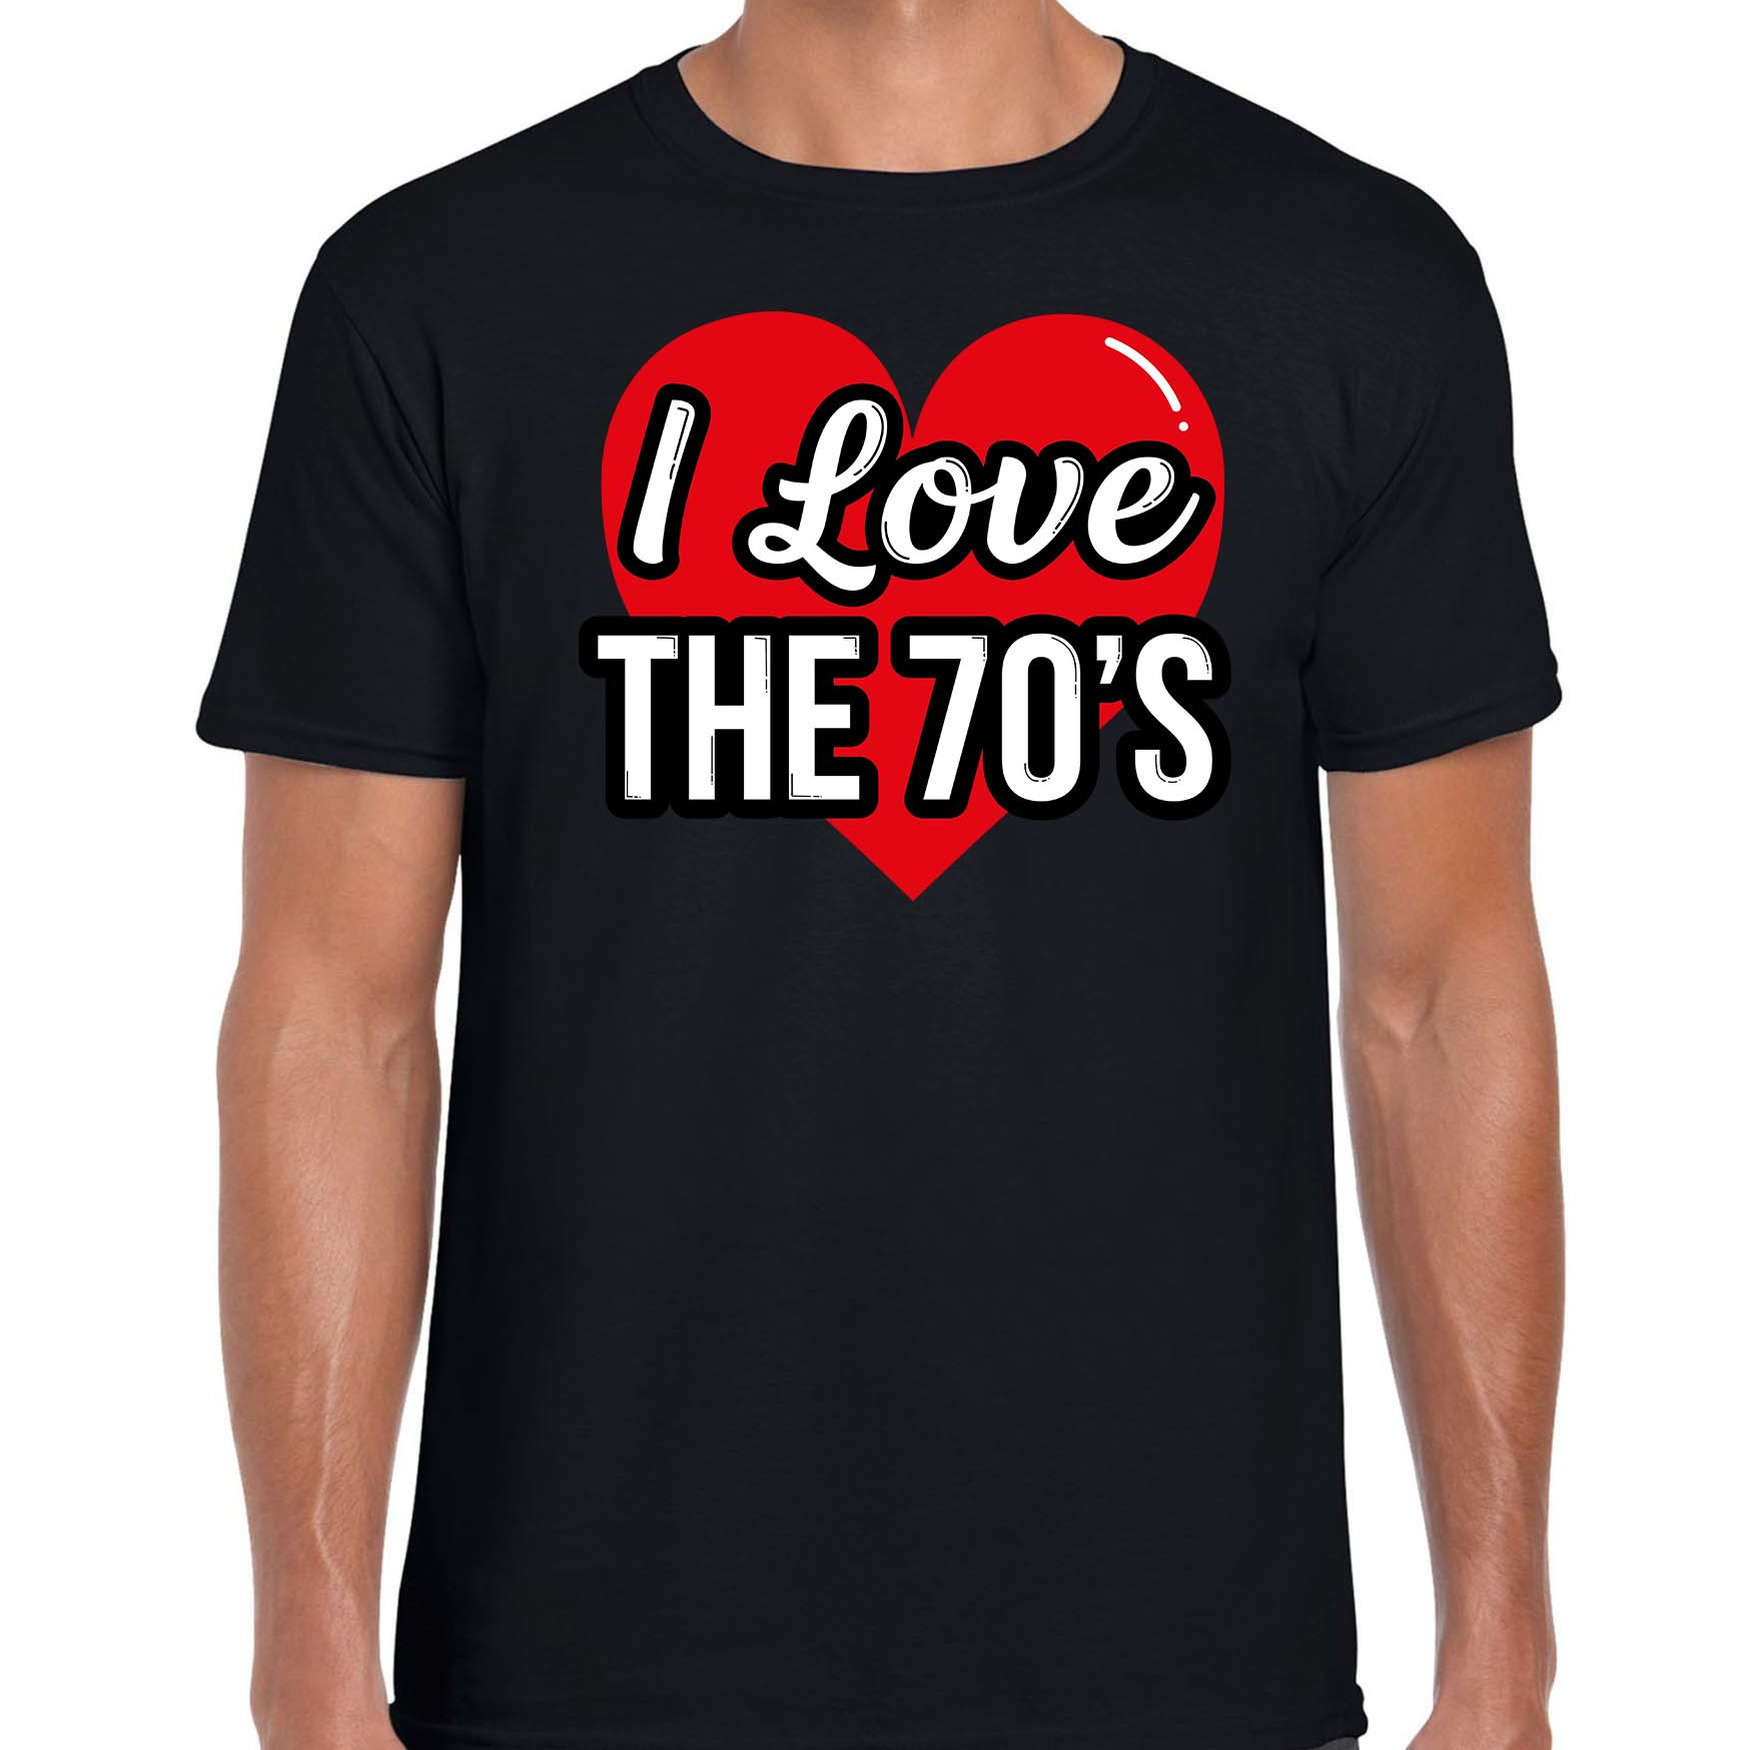 I love 70s verkleed t-shirt zwart voor heren 70s party verkleed outfit